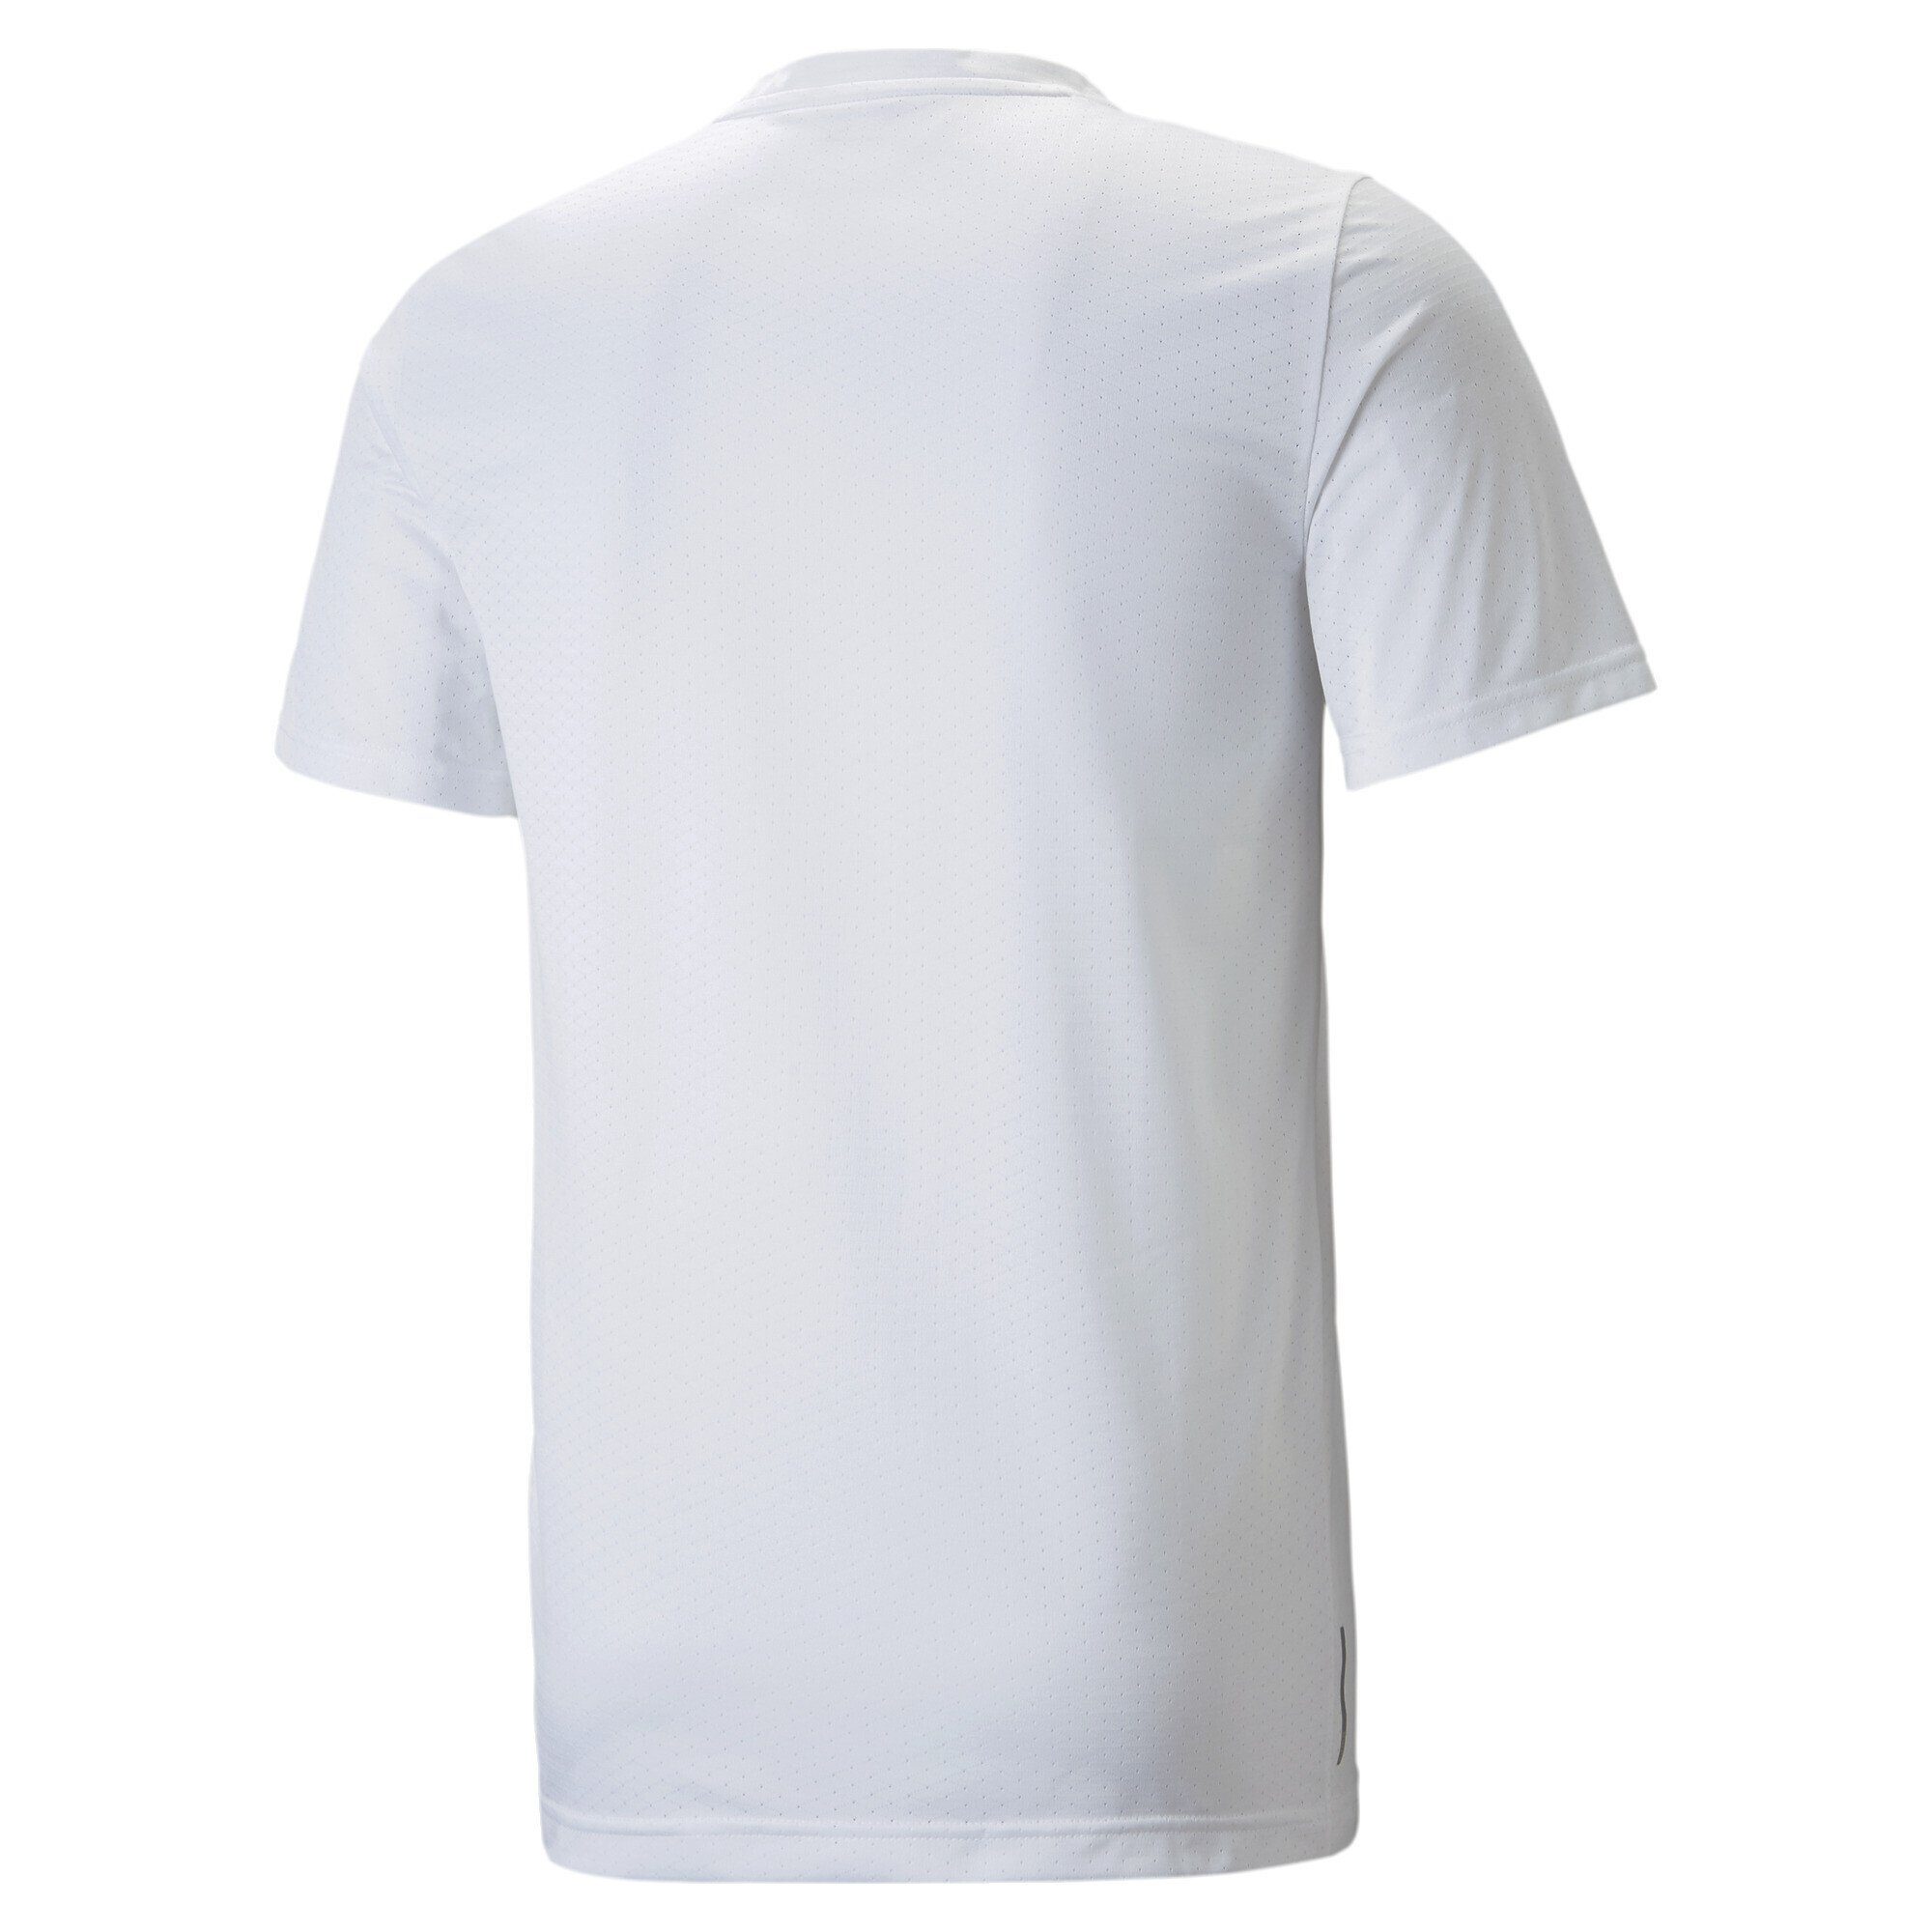 Trainingsshirt White Favourite Blaster Trainingsshirt Herren PUMA